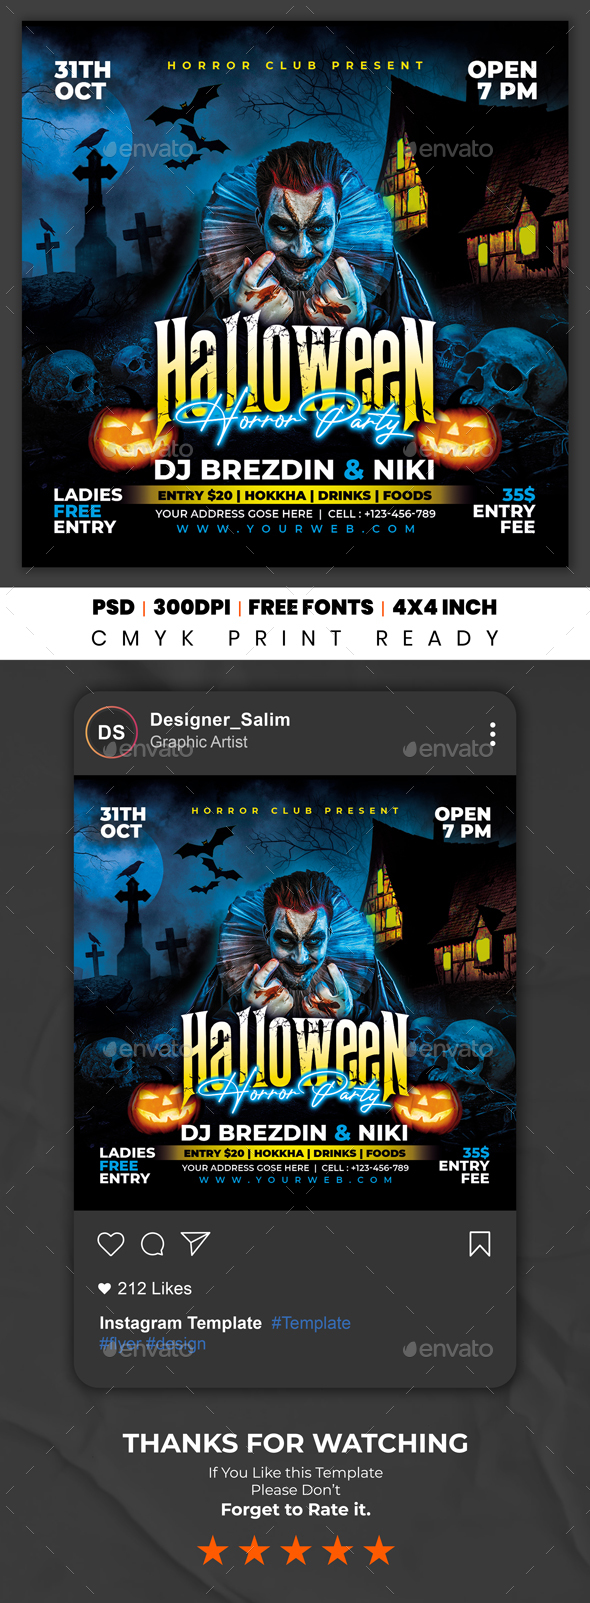 [DOWNLOAD]Halloween Flyer